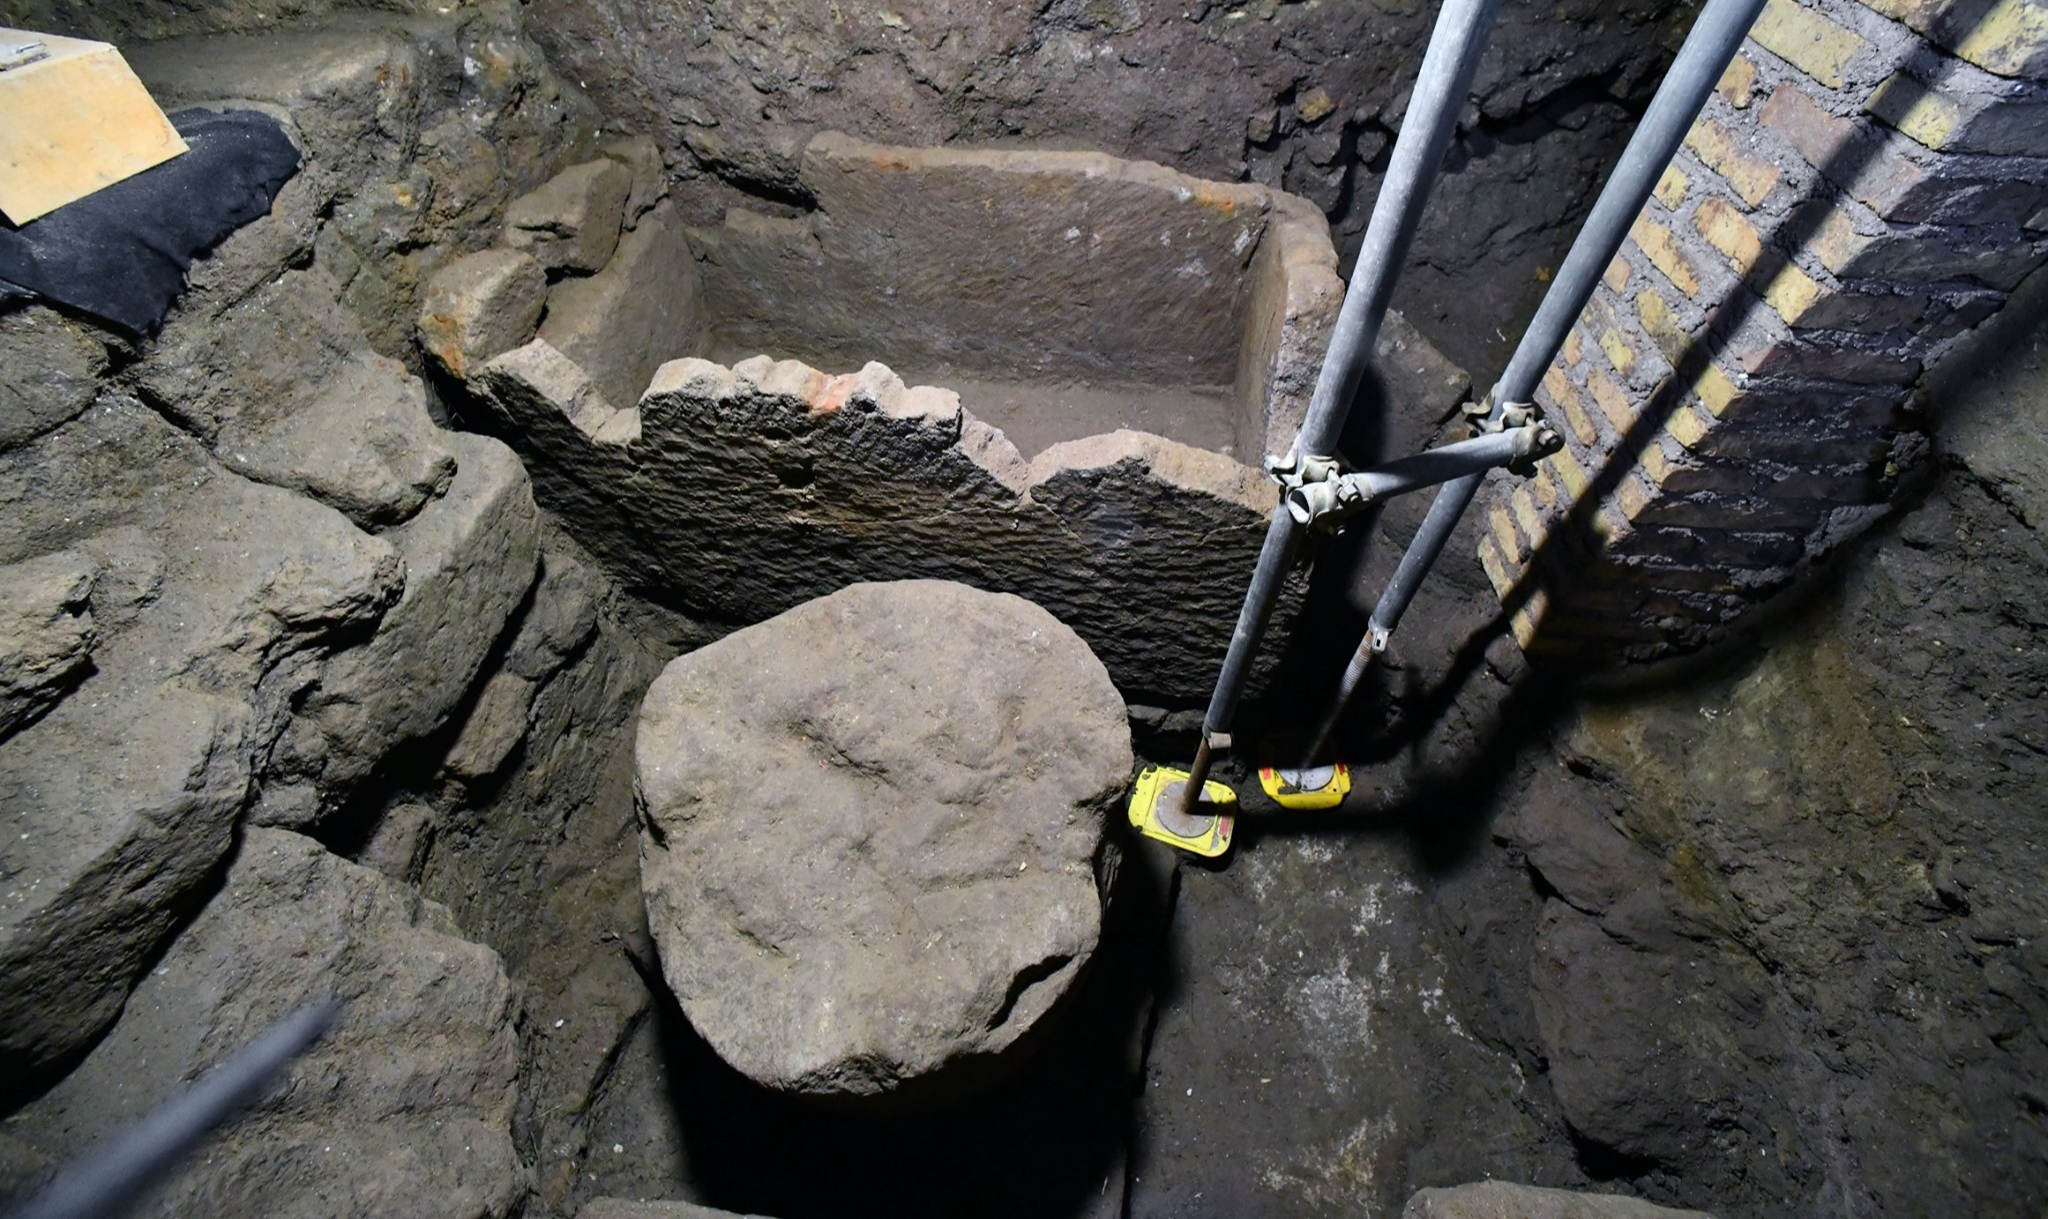 Escavações recentes no parque do Coliseu confirmaram hipótese ao descobrir 'um sarcófago associado a um elemento circular, provavelmente um altar'